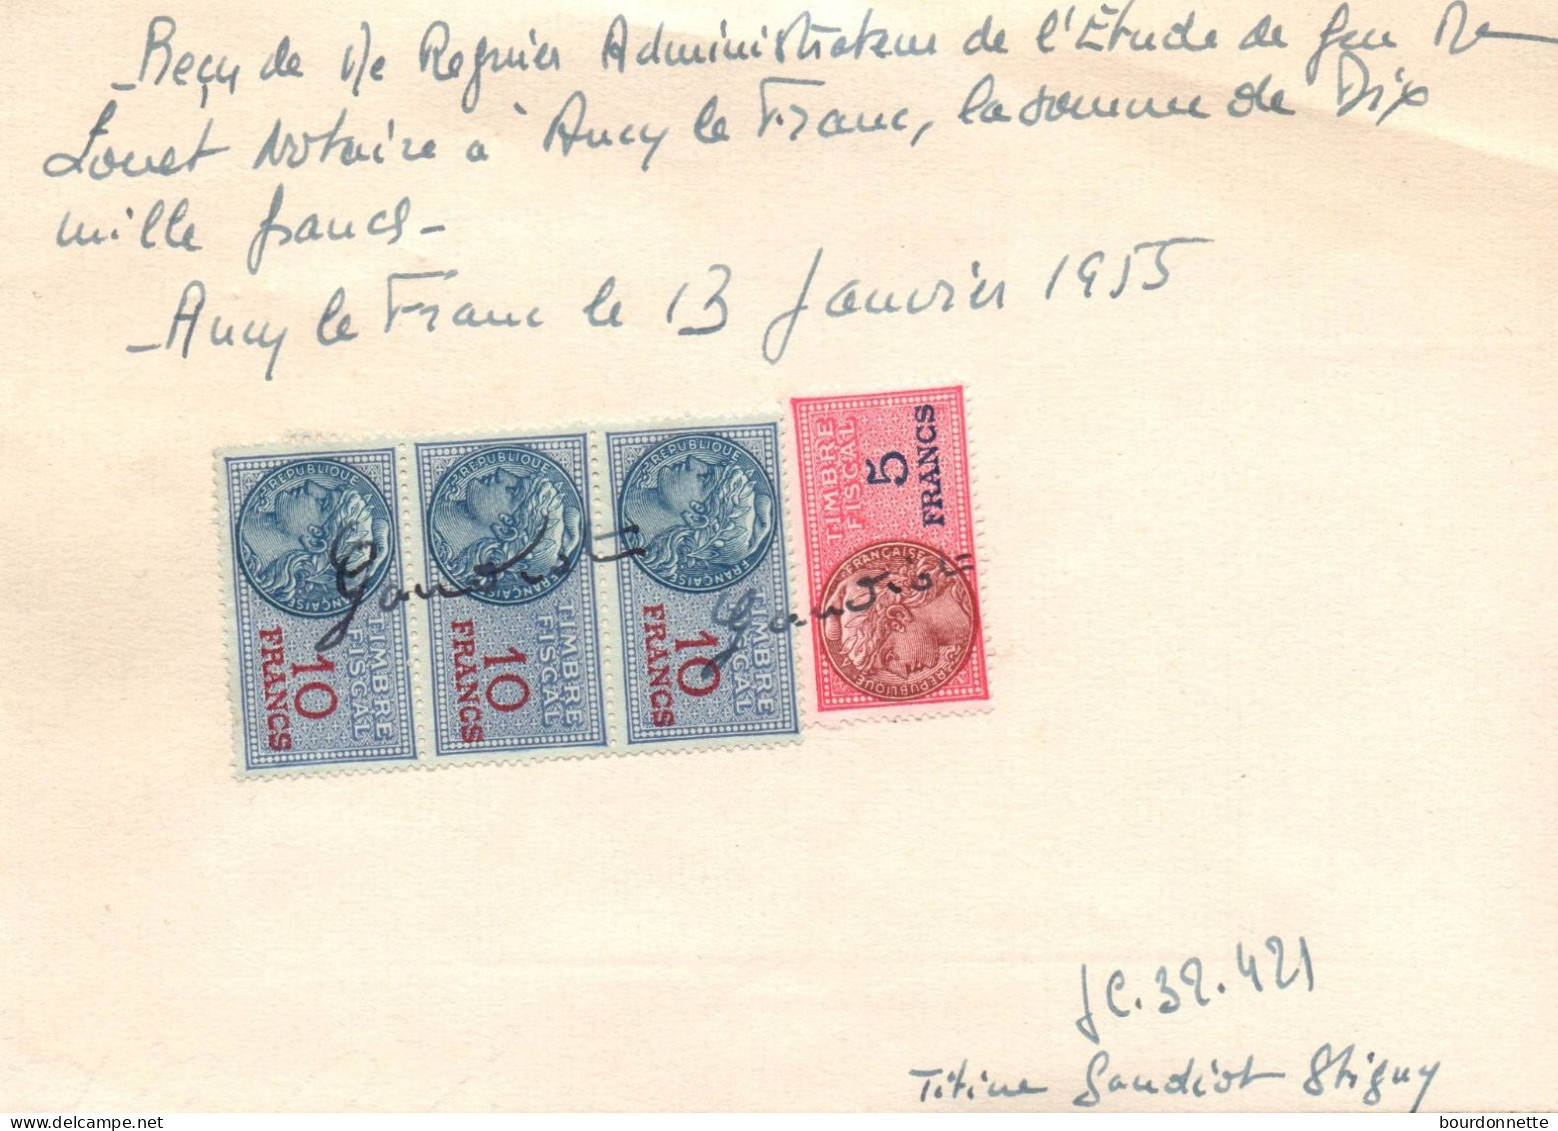 TIMBRES FISCAUX Sur Documents Ancy Le Franc Yonne 1955 STIGNY - Storia Postale